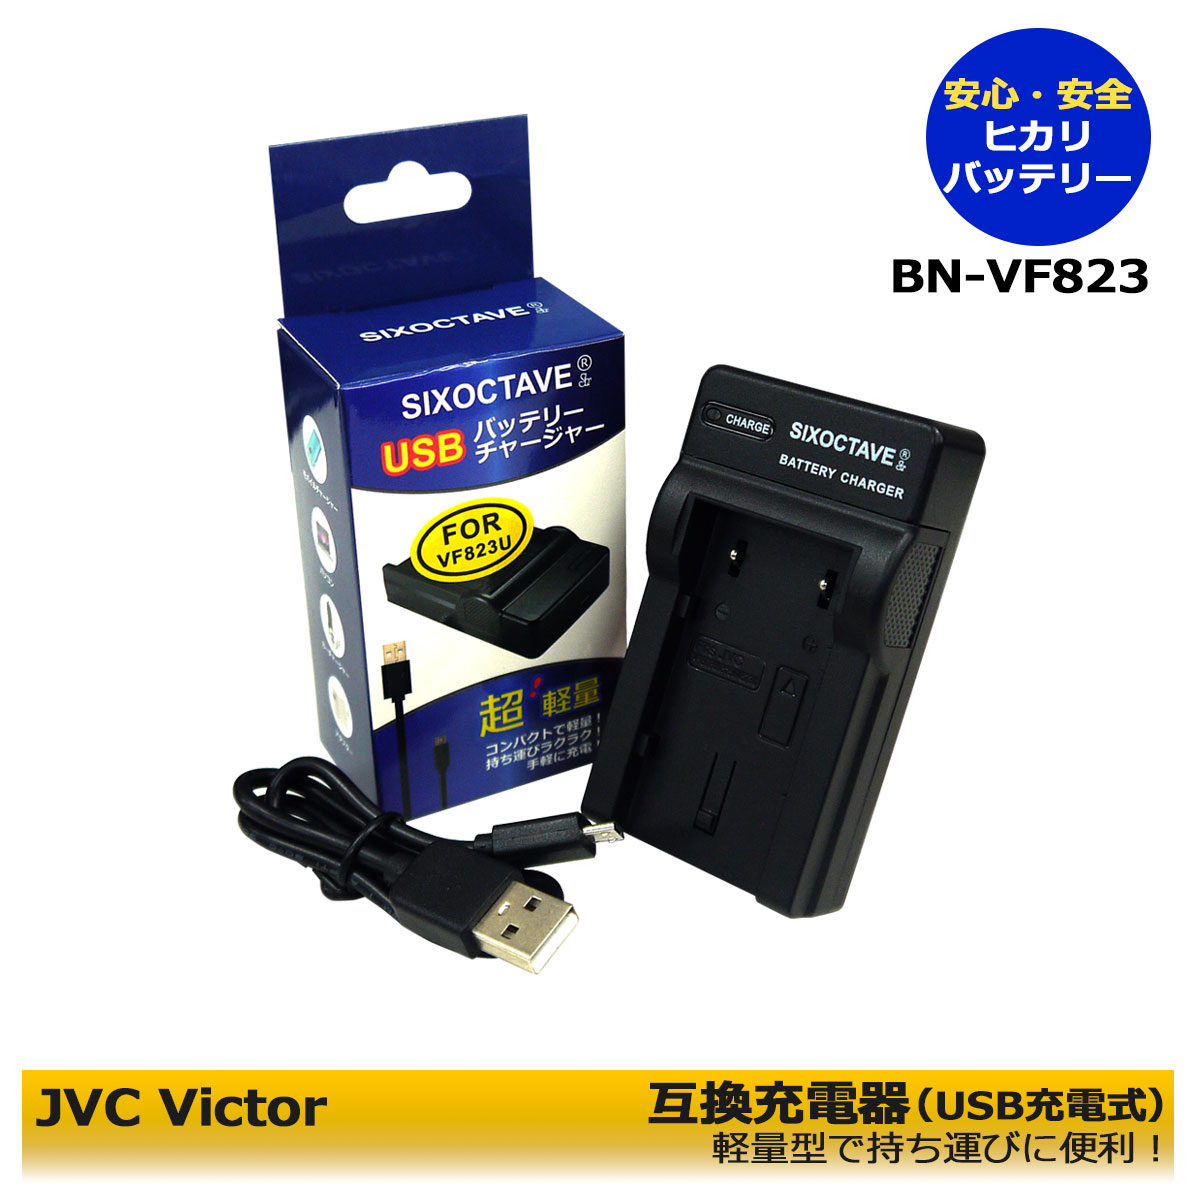 楽天市場】日本ビクターJVC 【あす楽対応】JVC AA-VF8 対応 互換USB充電器 BN-VF823 BN-VF808 BN-VF908 等GZ -MG262/GZ-HD5/GZ-HD7/MG880/GS-TD1/GZ-HM400 /GZ-HD300/MG220/MG650/MG35/MG260  /GZ-MG880/GZ-HM200 VU-V863KIT/GZ-X900 用 : ヒカリバッテリー